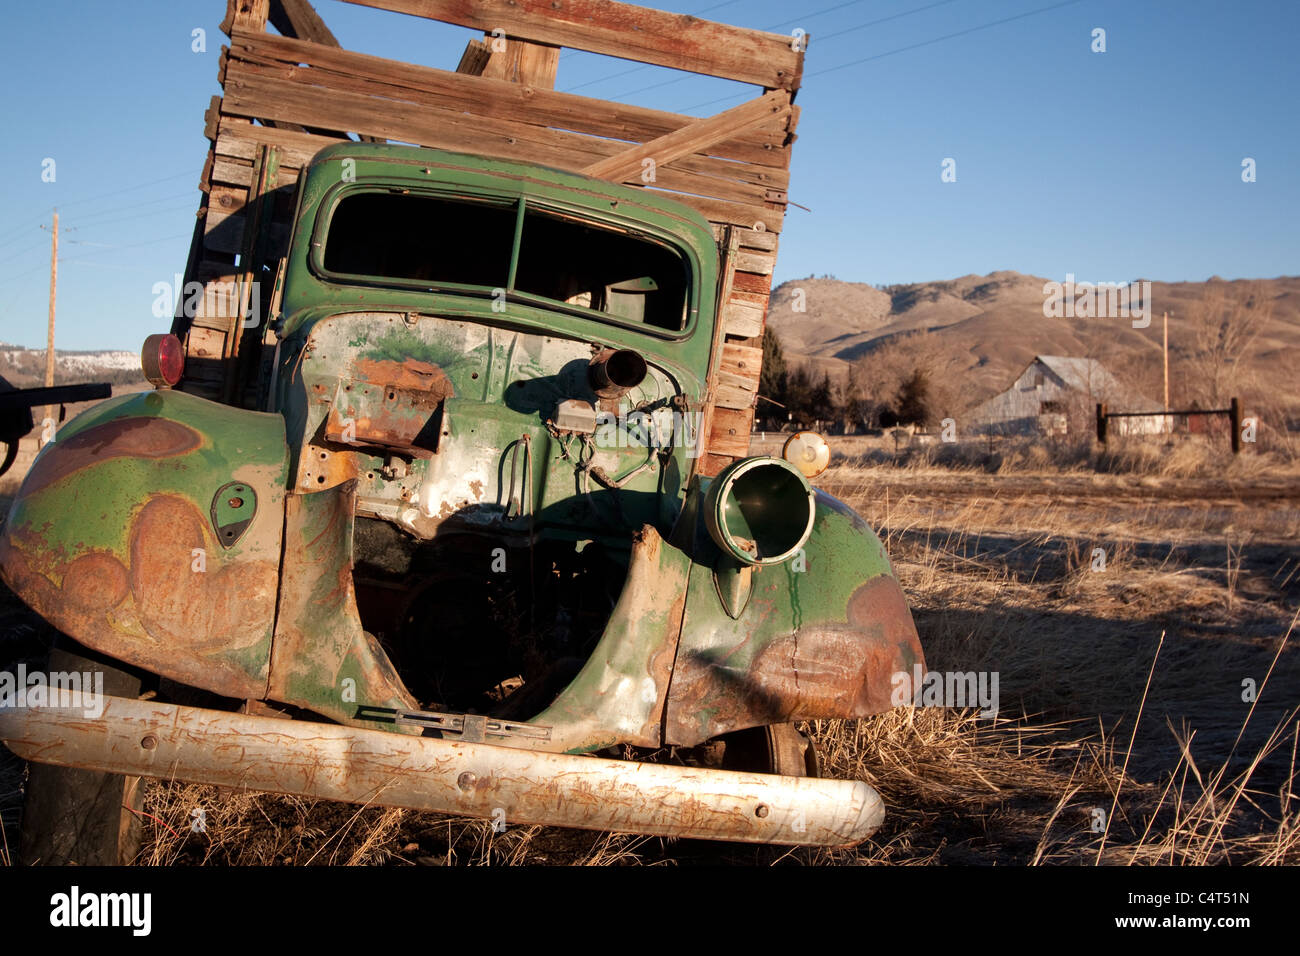 Un vieux camion de livraison van vintage abandonnés dans un champ Banque D'Images